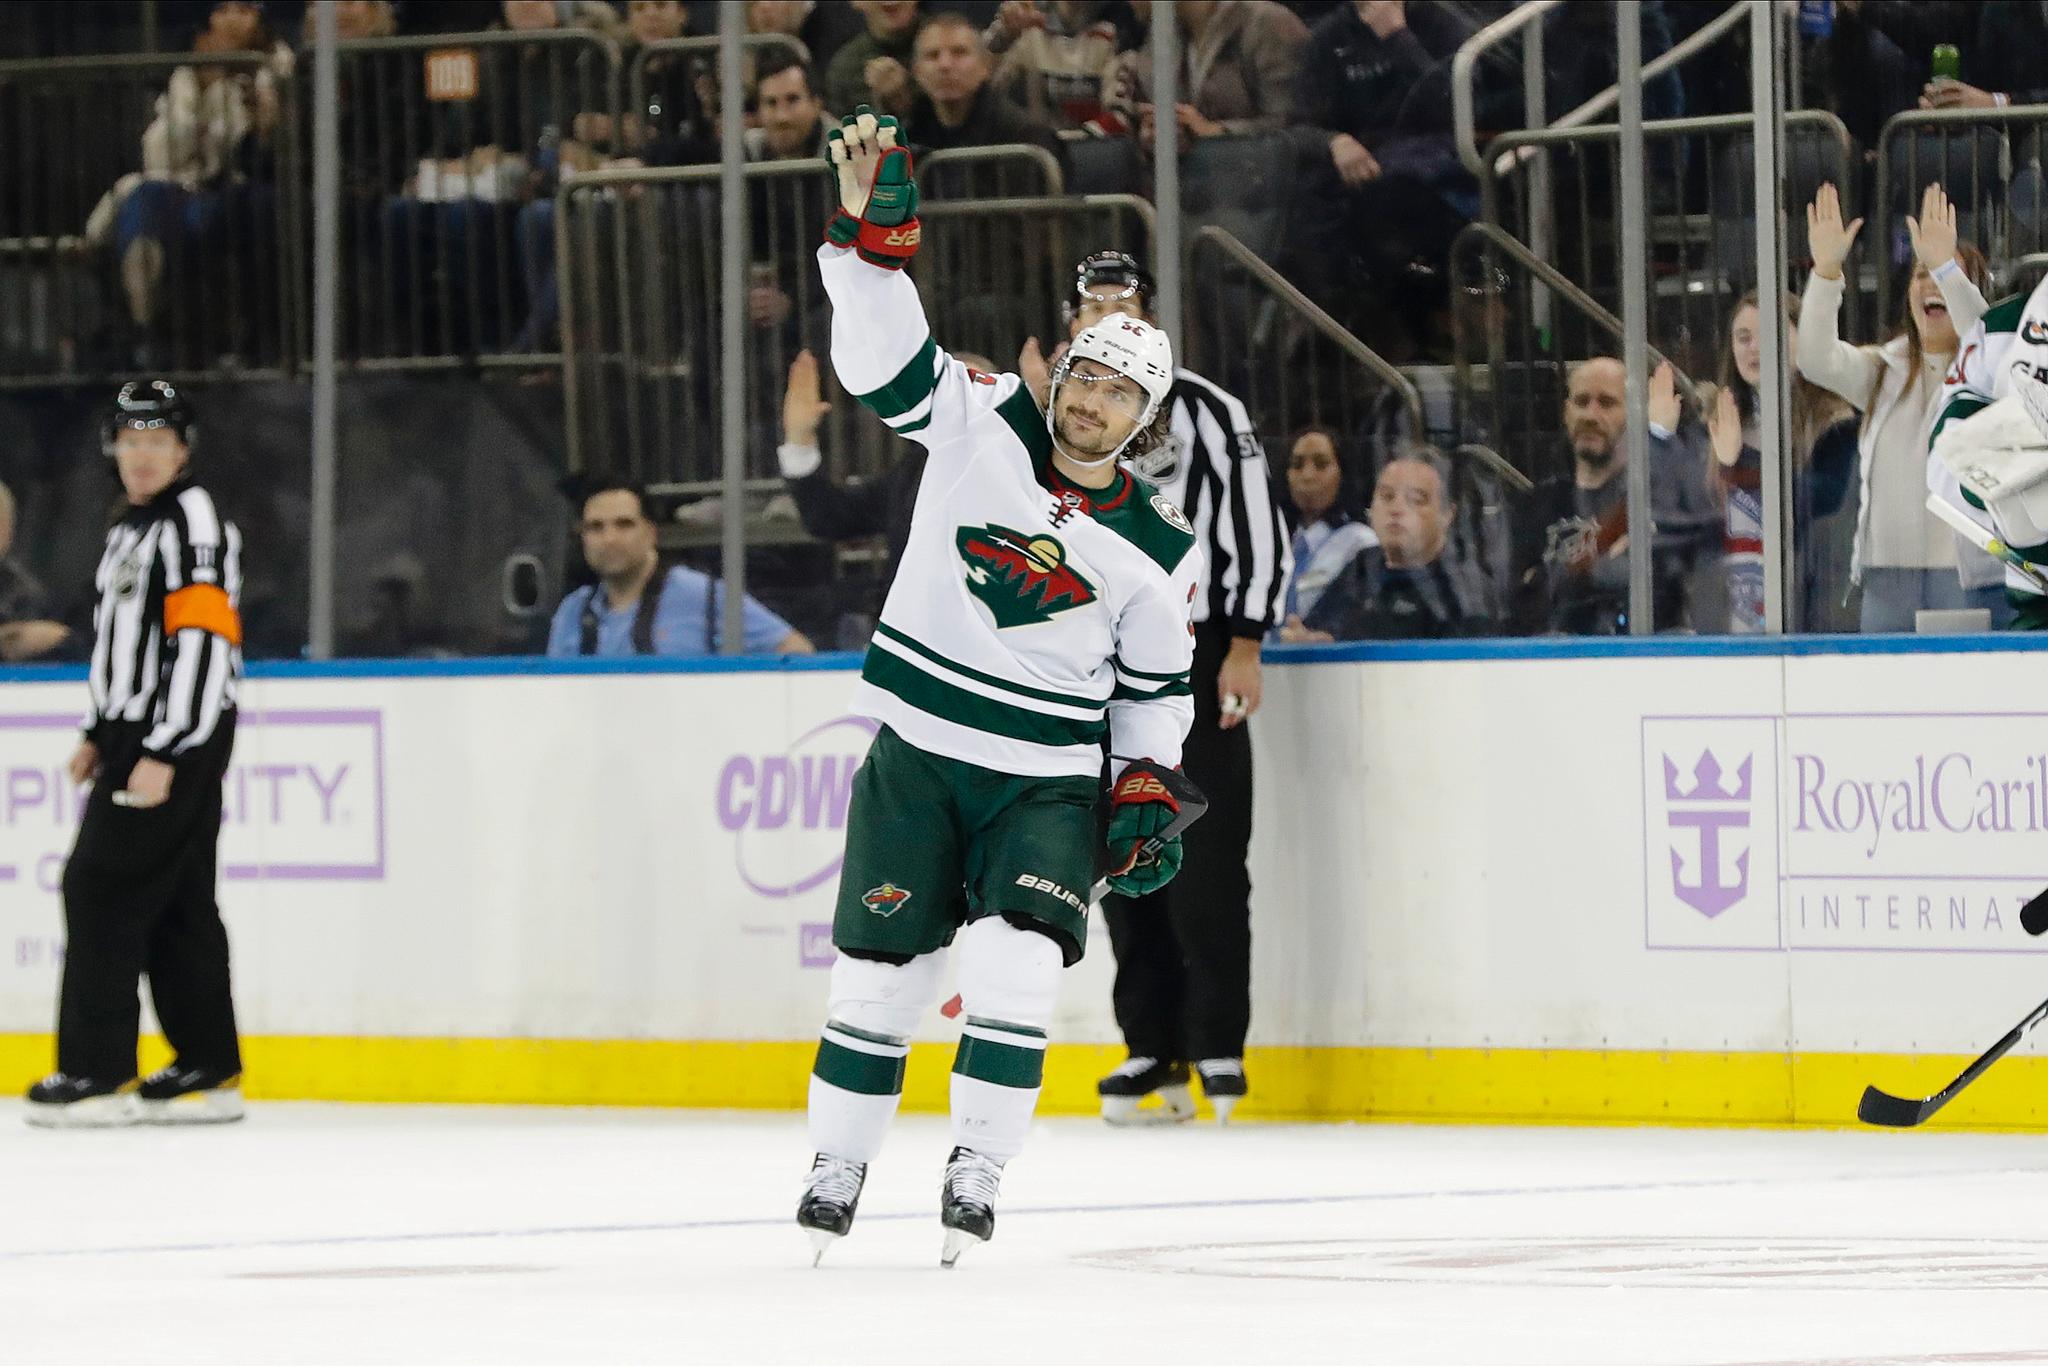 Etter videohyllesten av hans karriere for Rangers, gikk nåværende Minnesota Wild-spiller Mats Zuccarello på isen og vinket rørt til sine gamle fans i New York. 